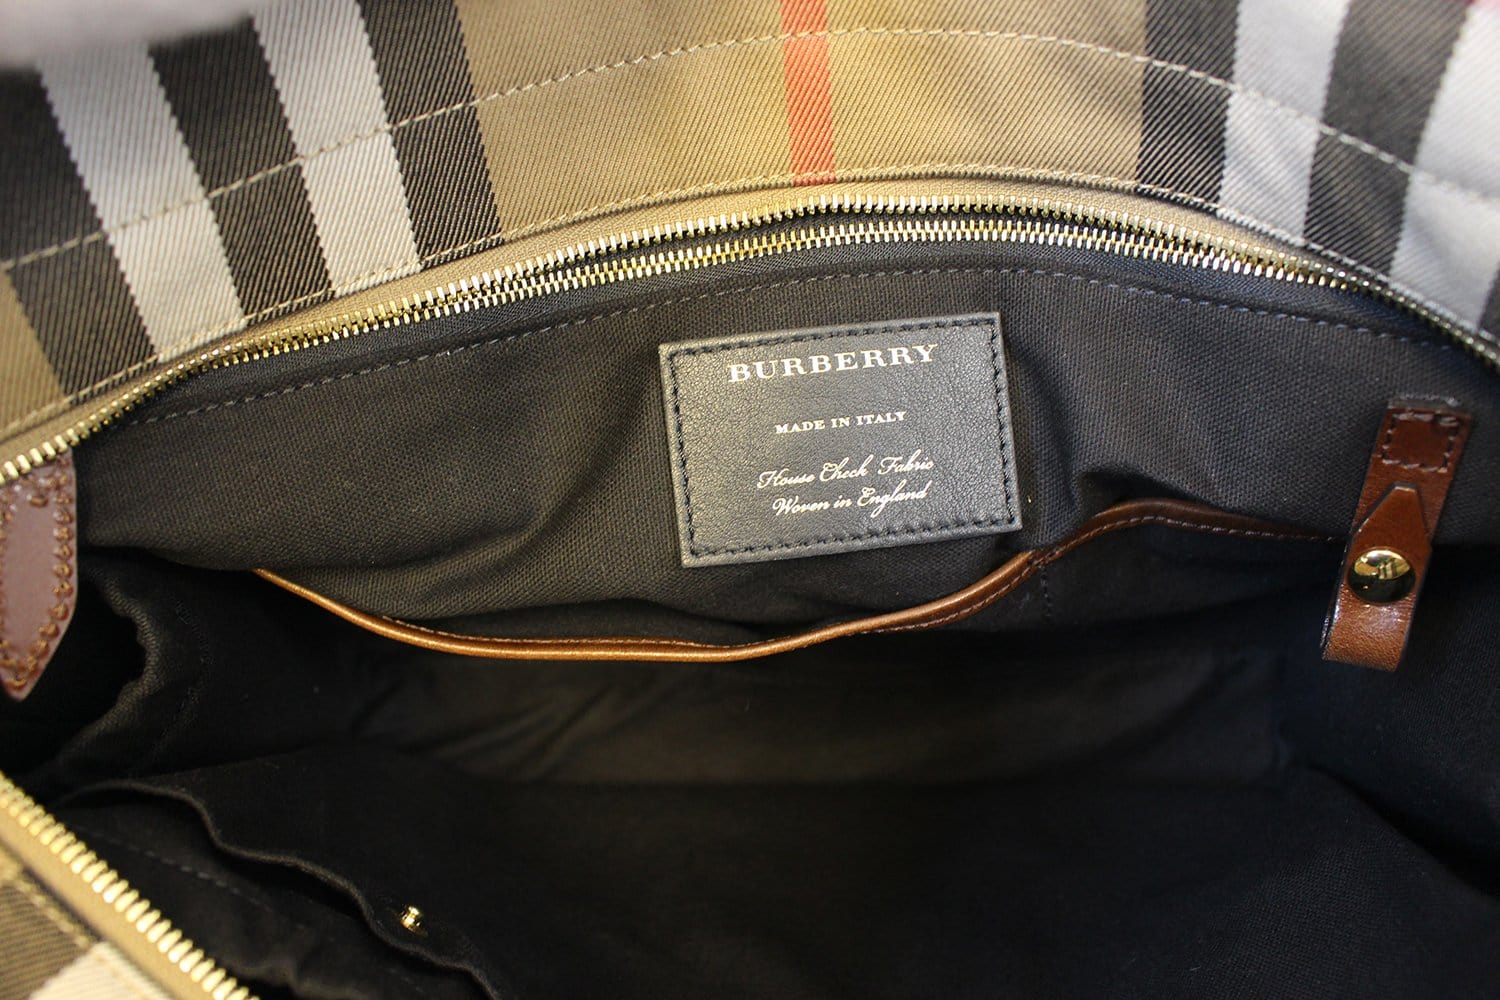 Burberry, Bags, Burberry Purse